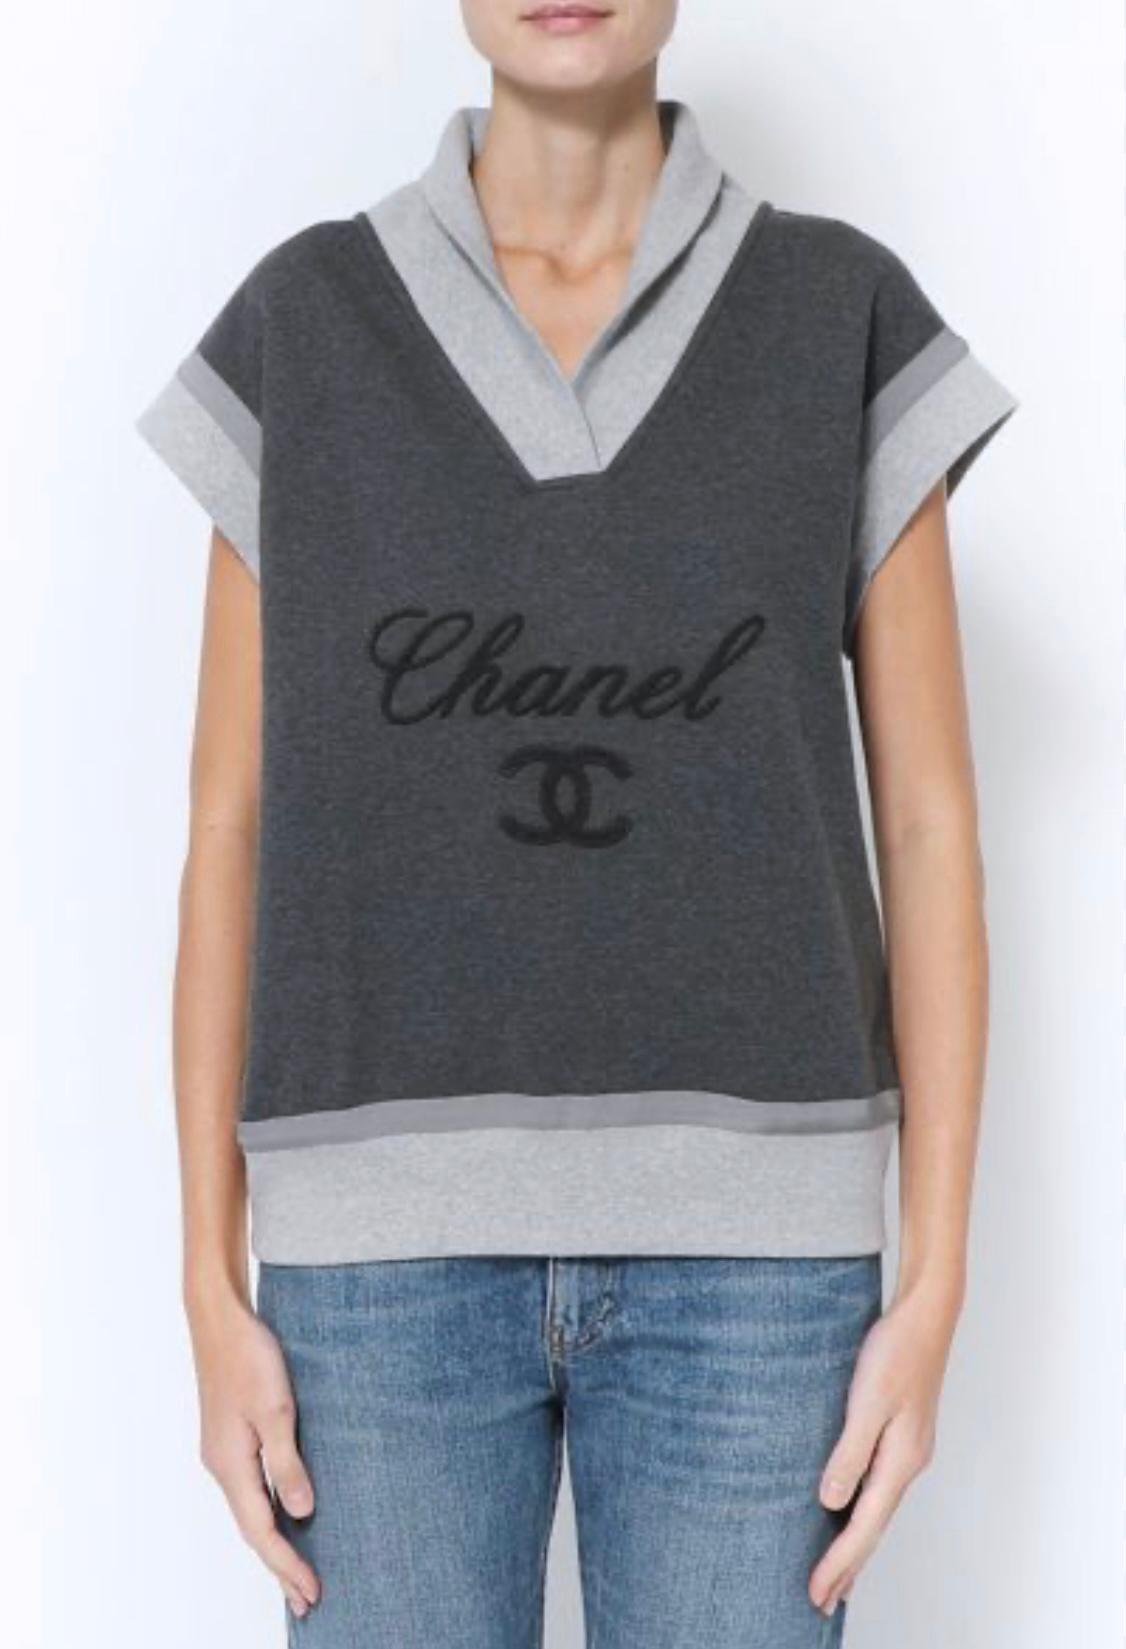 New Chanel super stylische graue Weste mit CC 'Chanel' Logo auf der Vorderseite
Größenbezeichnung 36 FR. Nie getragen